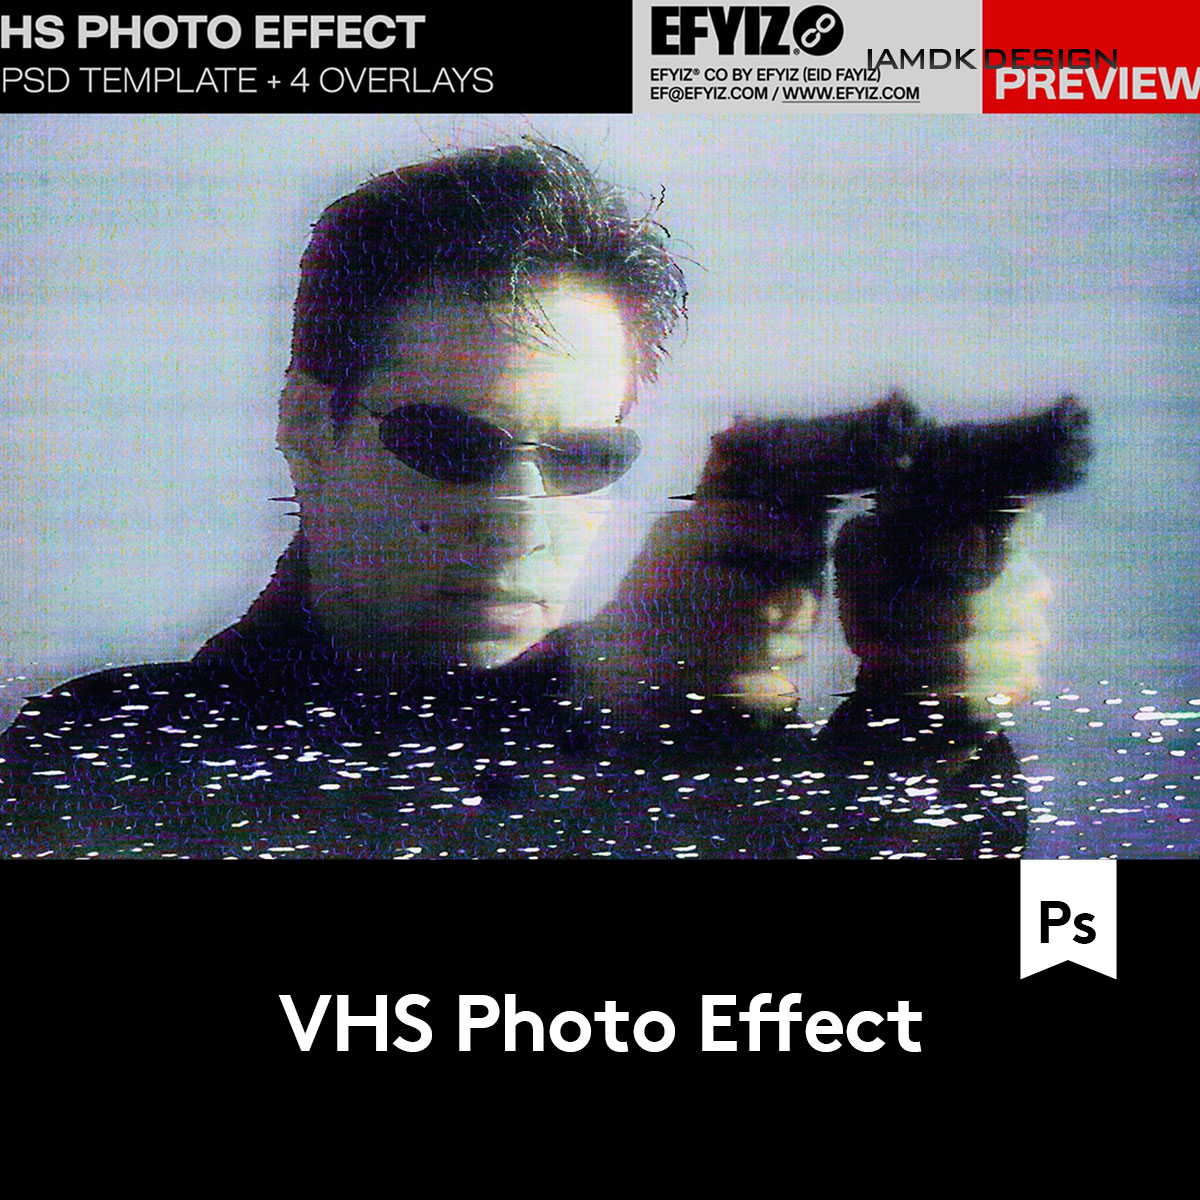 潮流复古90年代做旧失真故障VHS效果照片处理特效Ps设计素材套件